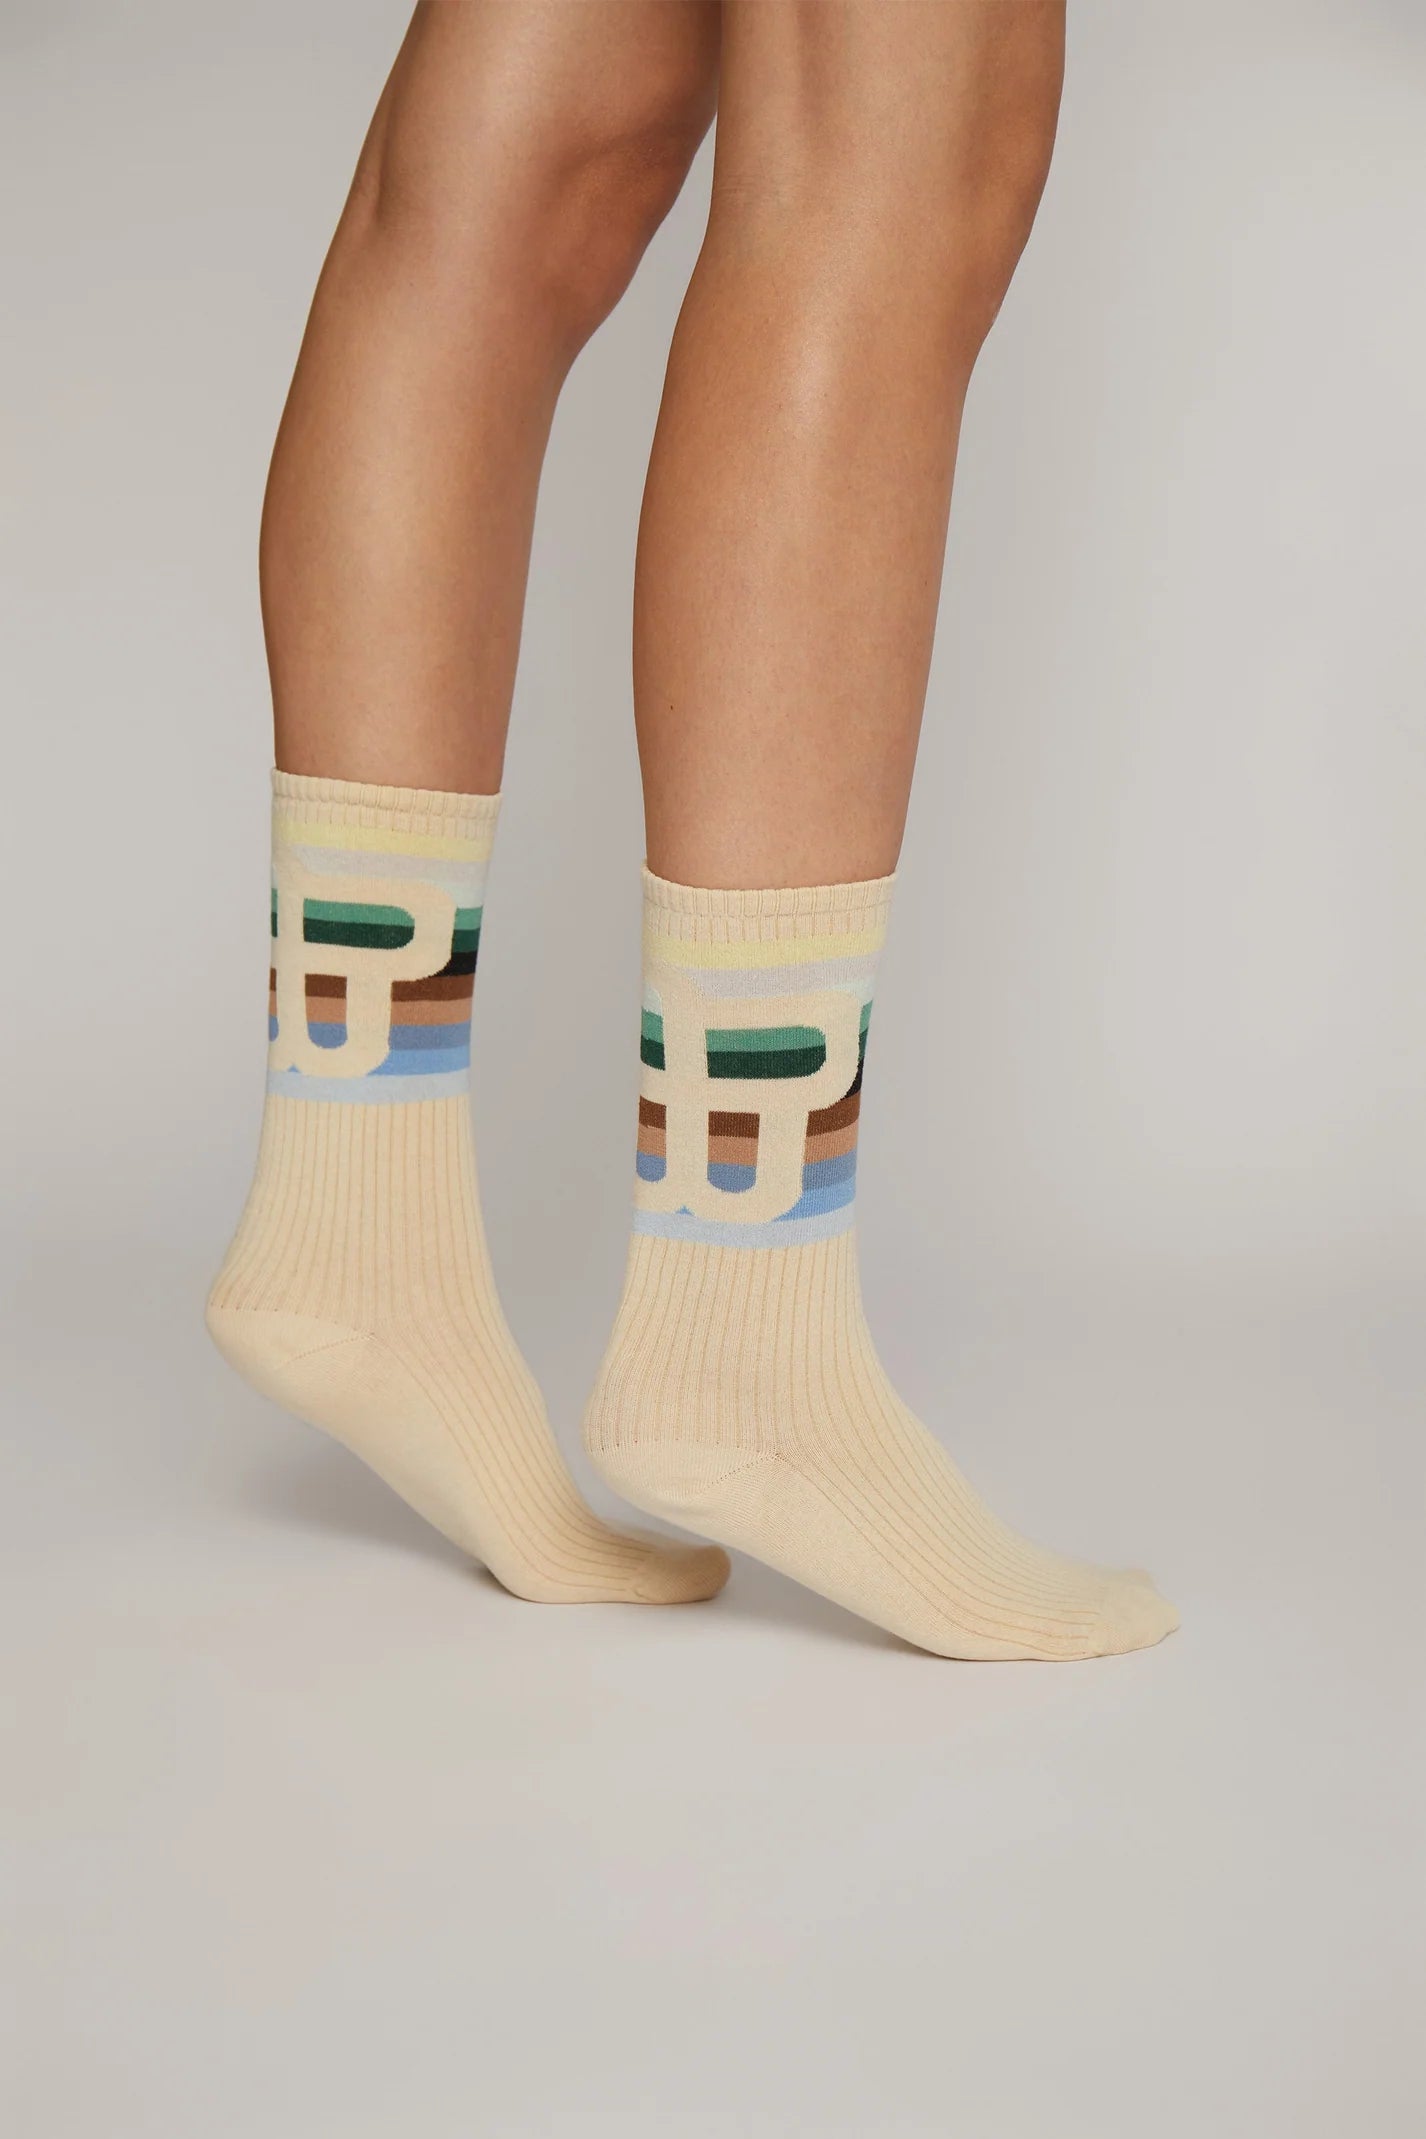 Munthe Otrik Socks Kit